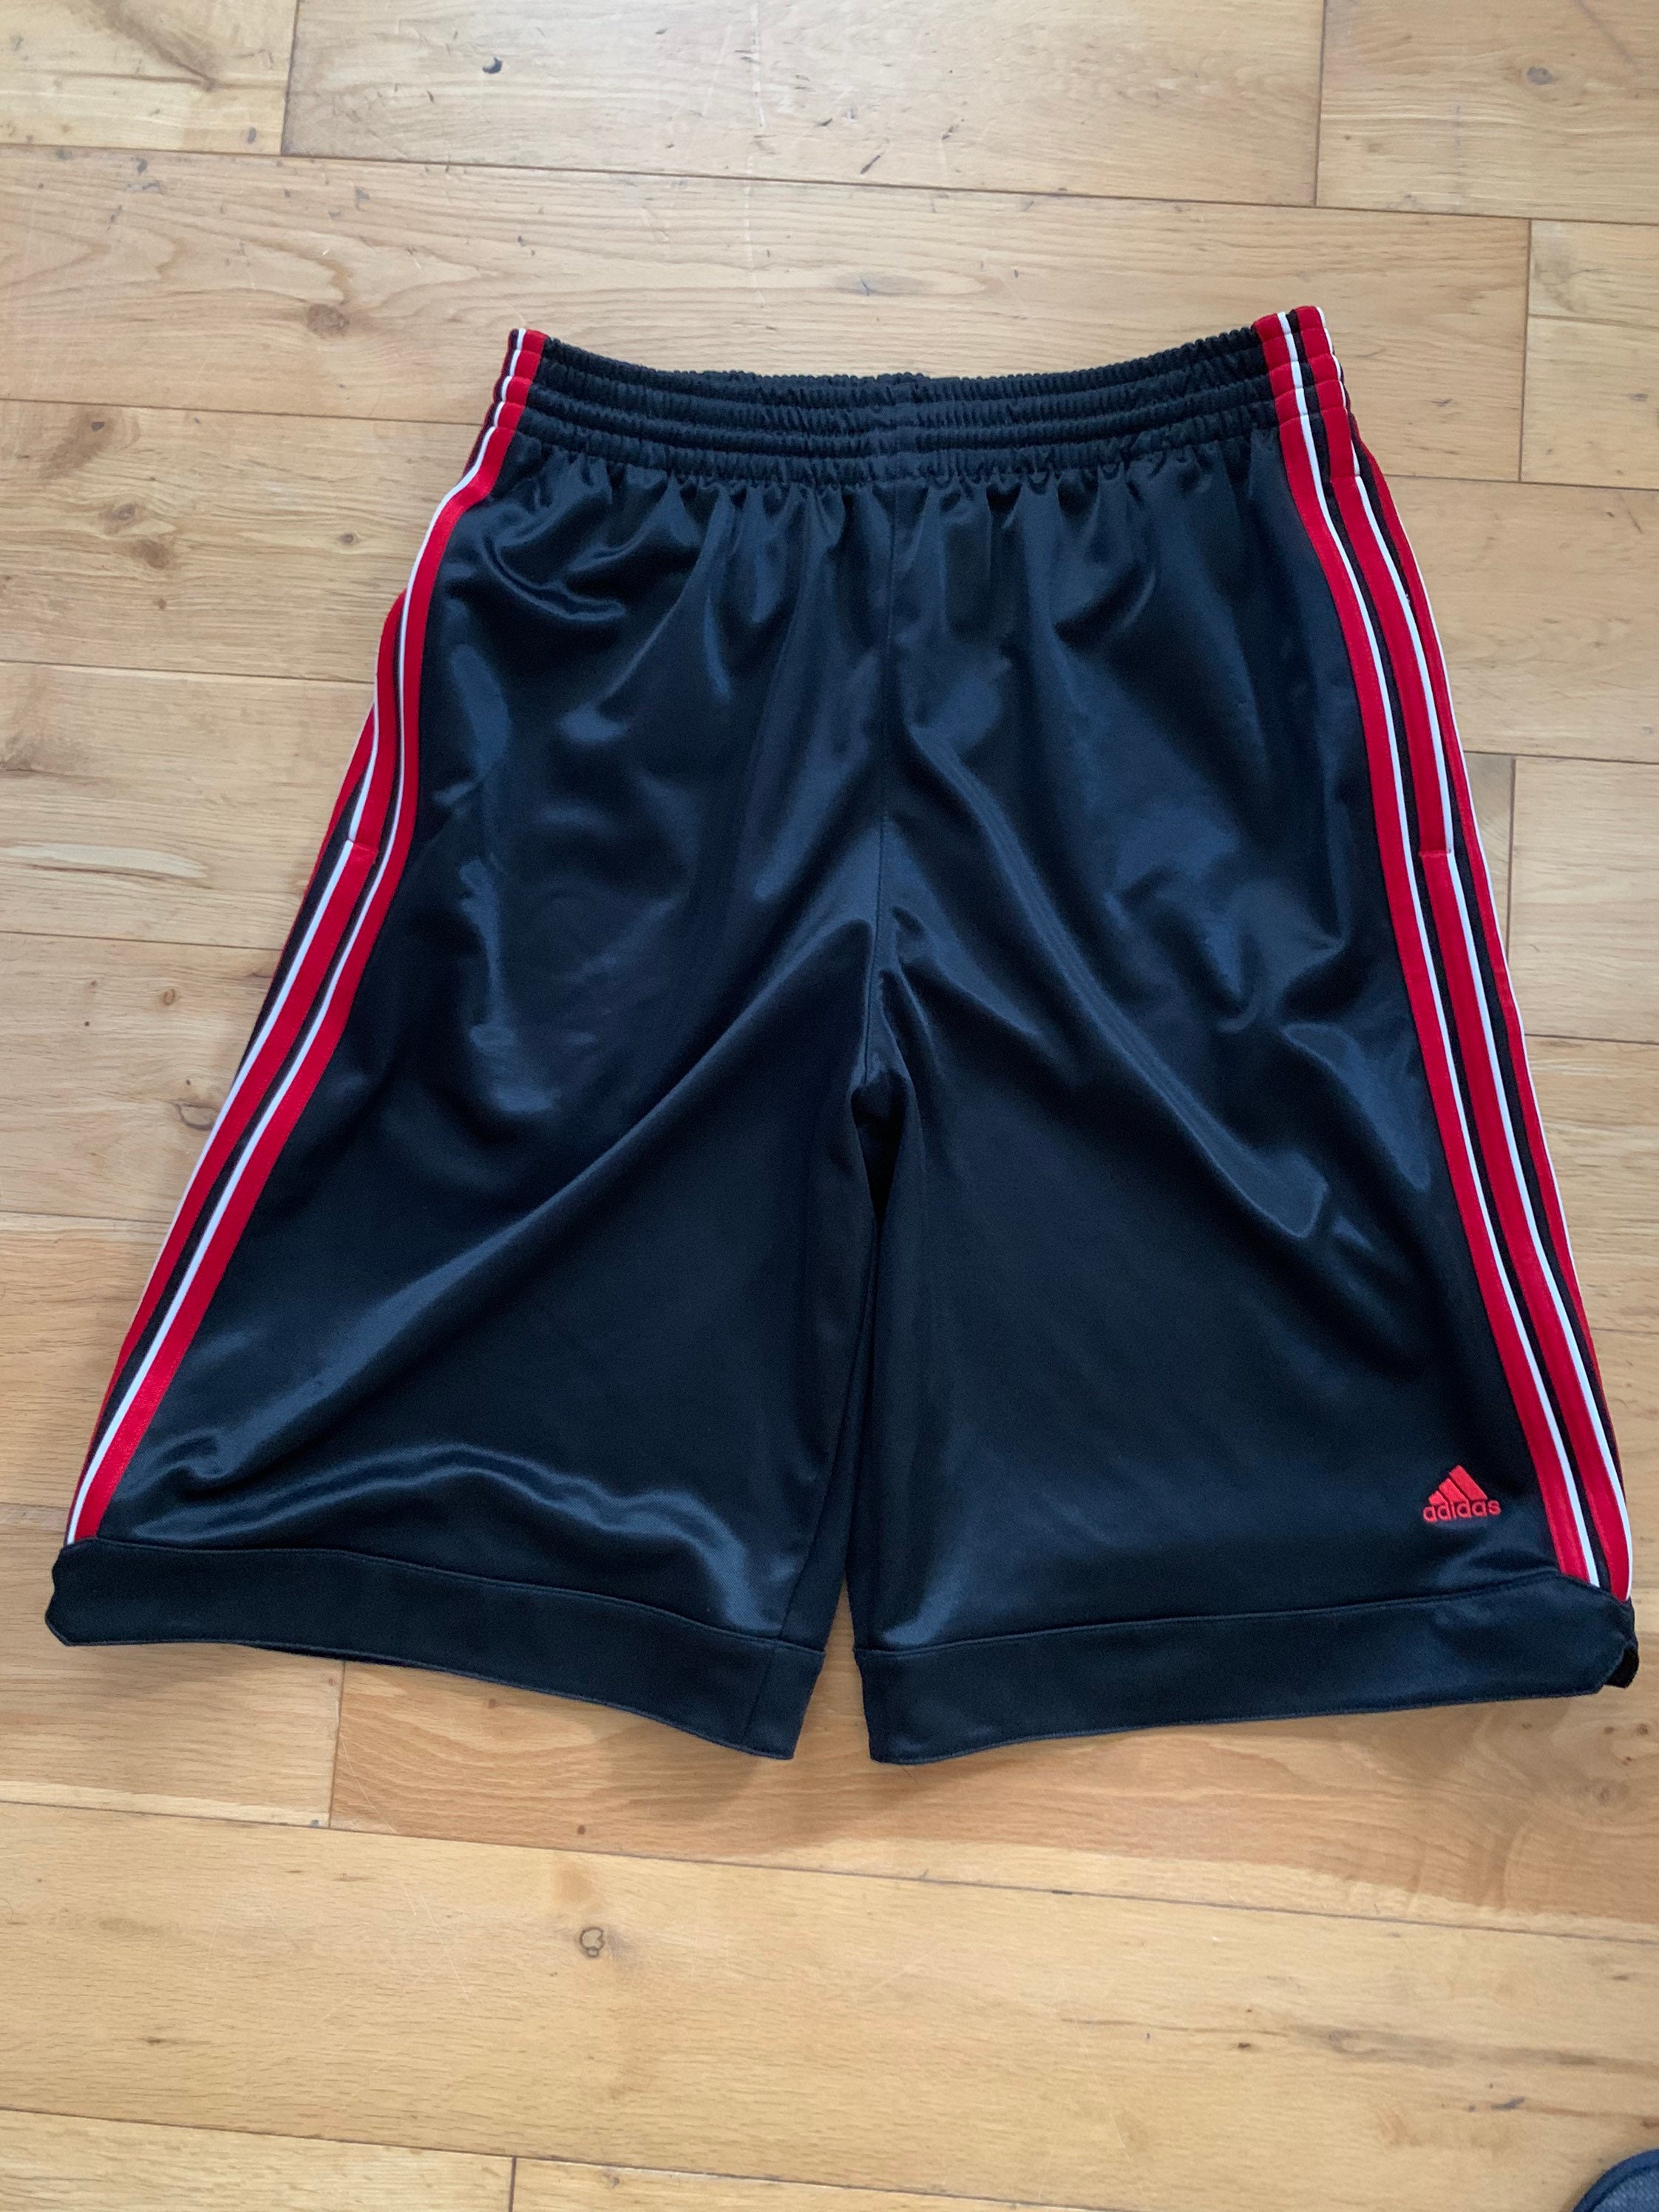 Adidas basketball shorts Black Clima365 Size M | Etsy